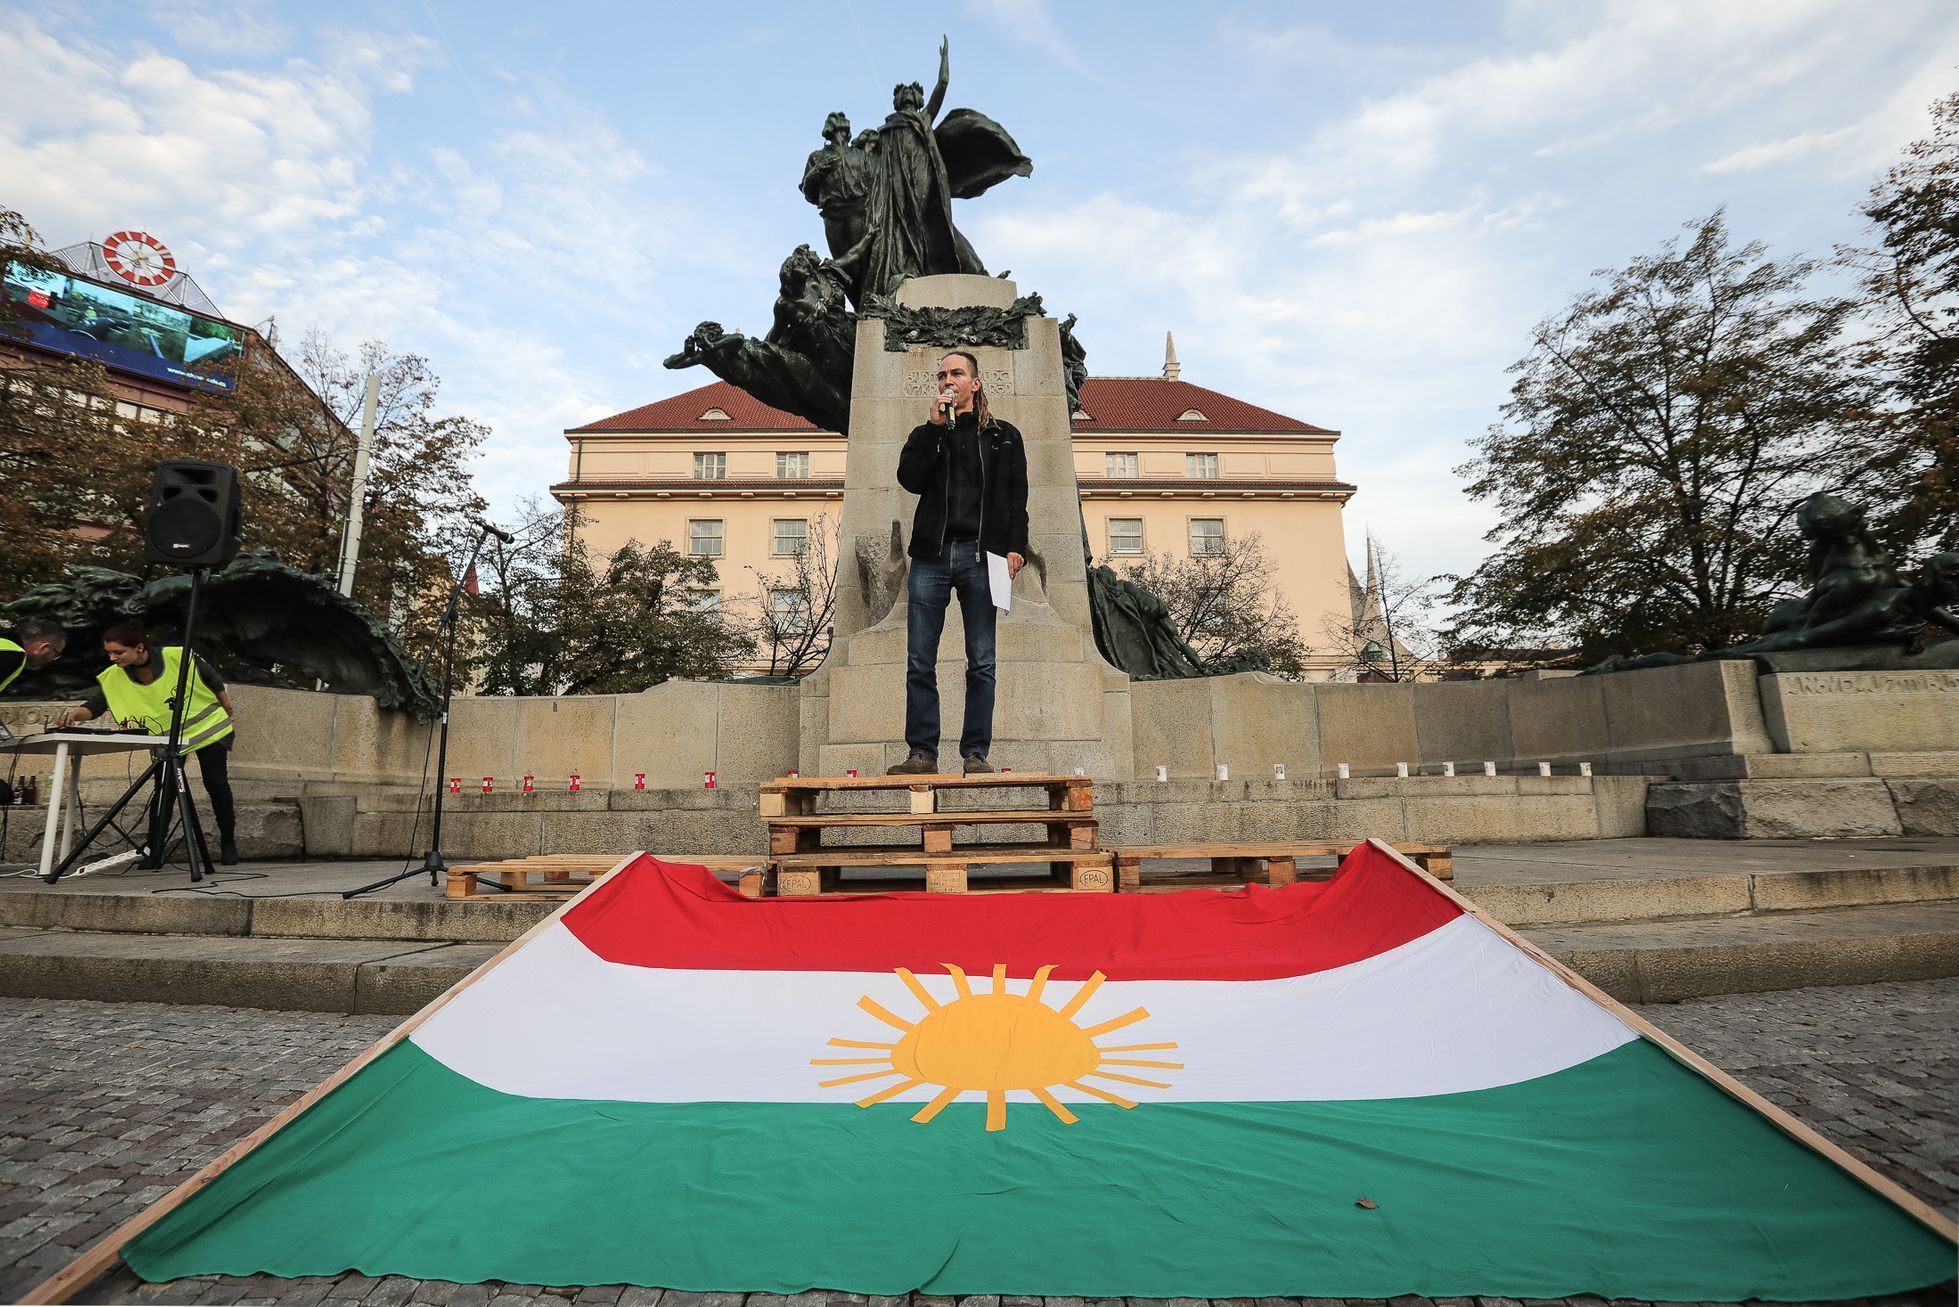 Demonstrace proti vpádu Turecku do severní Sýrie, Kurdistánu, organizuje Pirátská strana